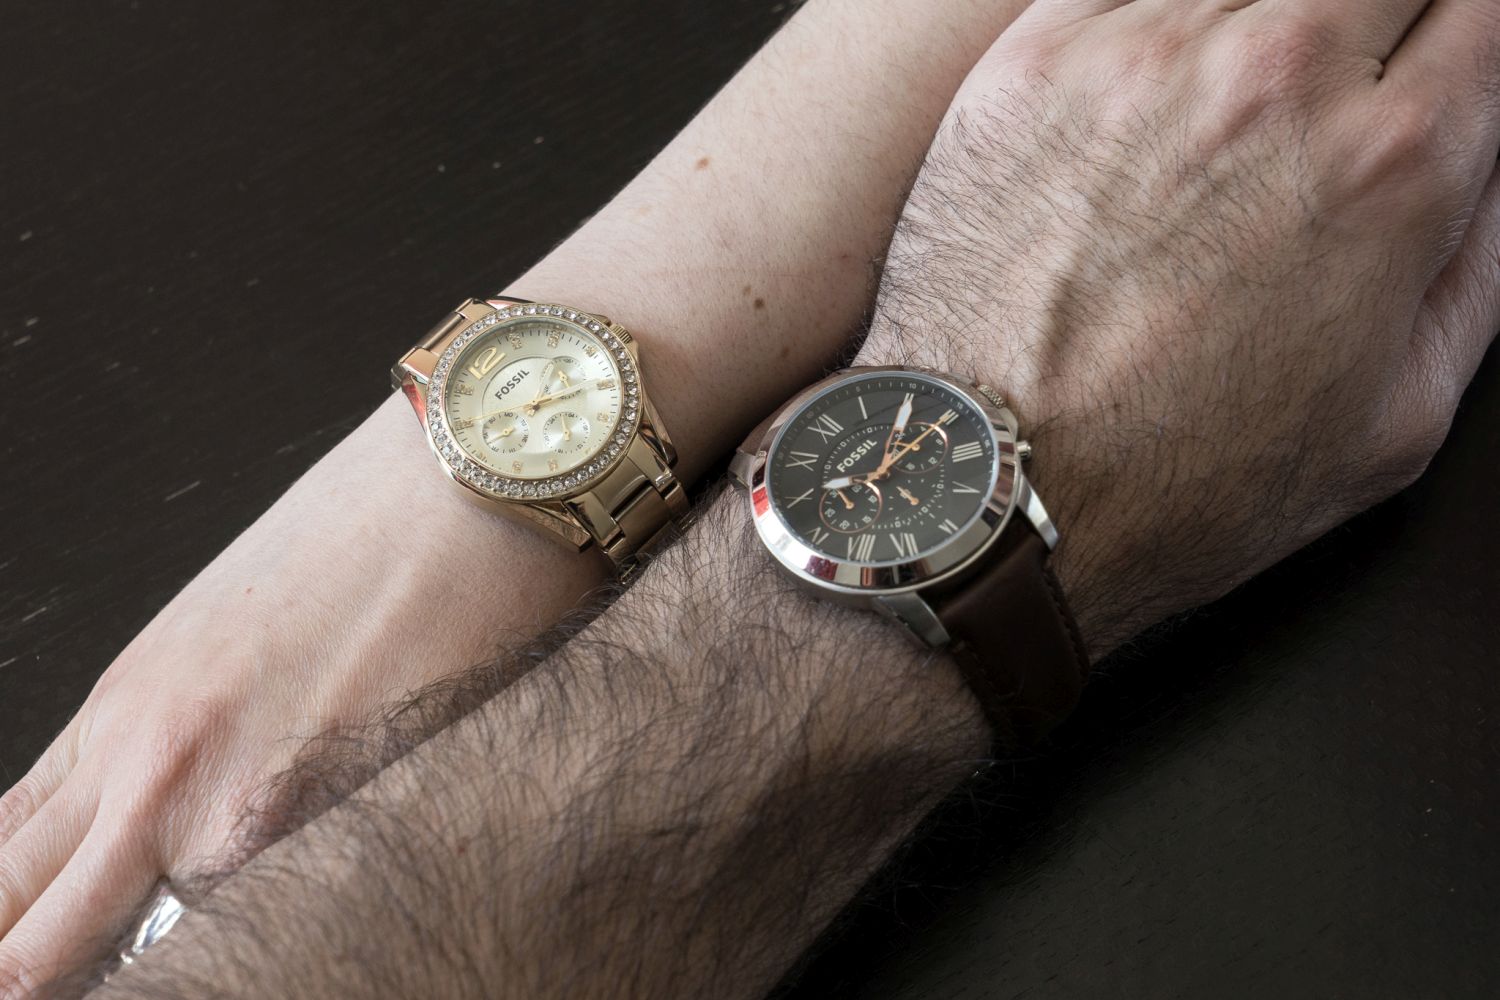 Les nouvelles montres Fossil arrivent chez Best Buy